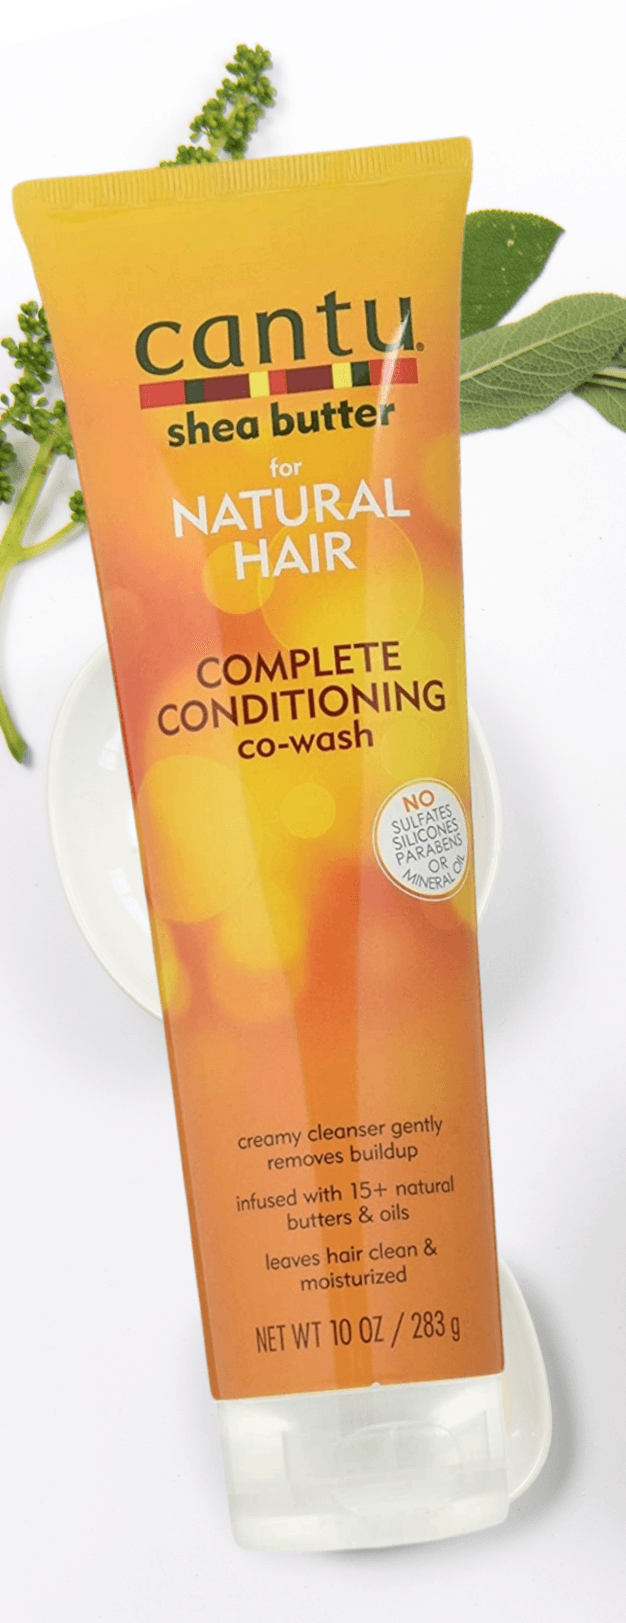 Cantu Shea ButterConditioning Co-WashFor Natural Hair - LocsNco